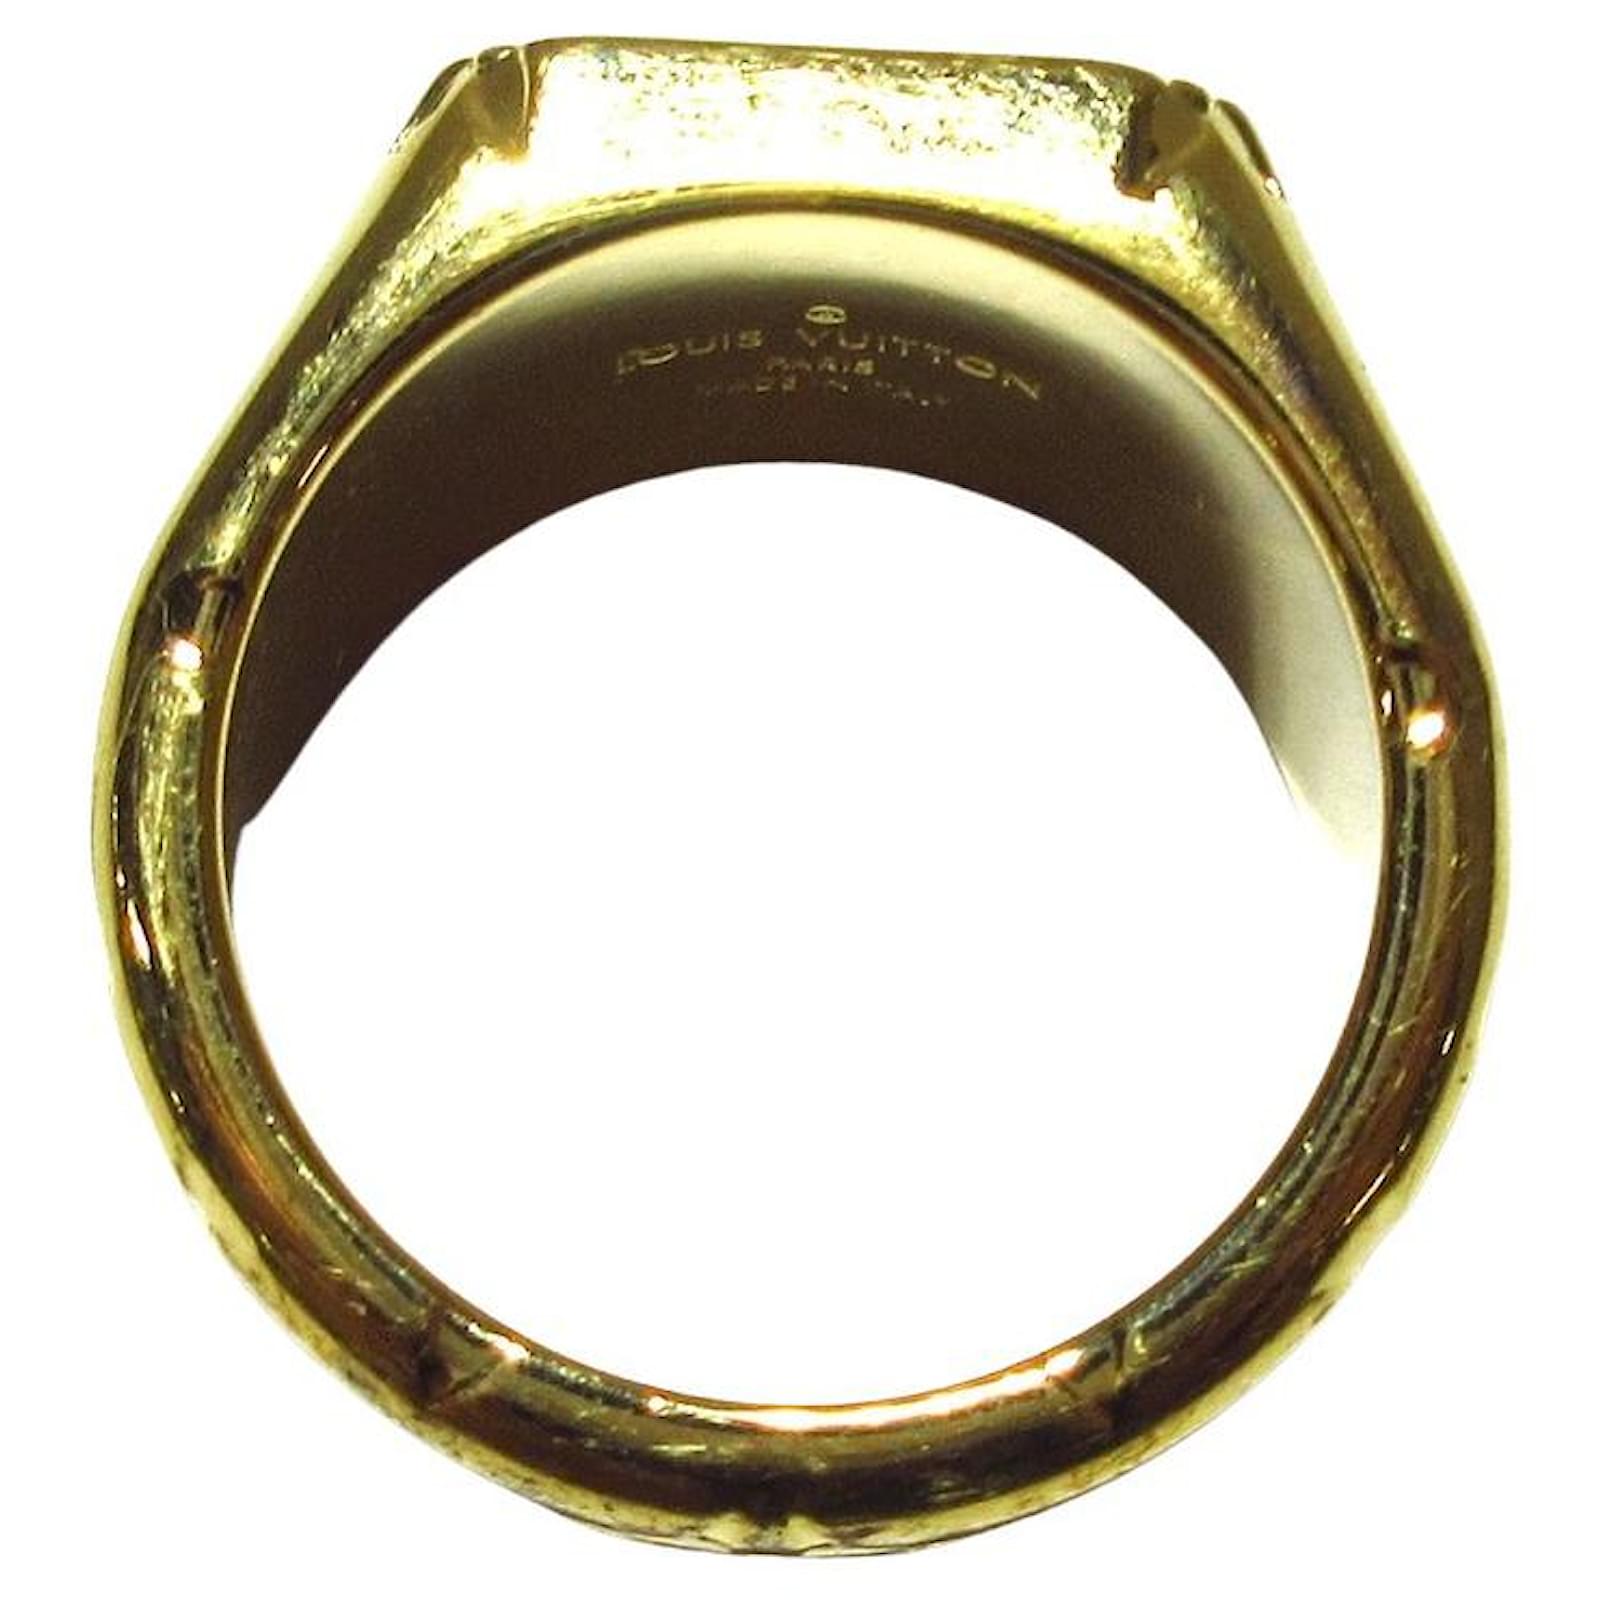 Louis Vuitton Monogram Signet Ring - 18K Yellow Gold-Plated Signet